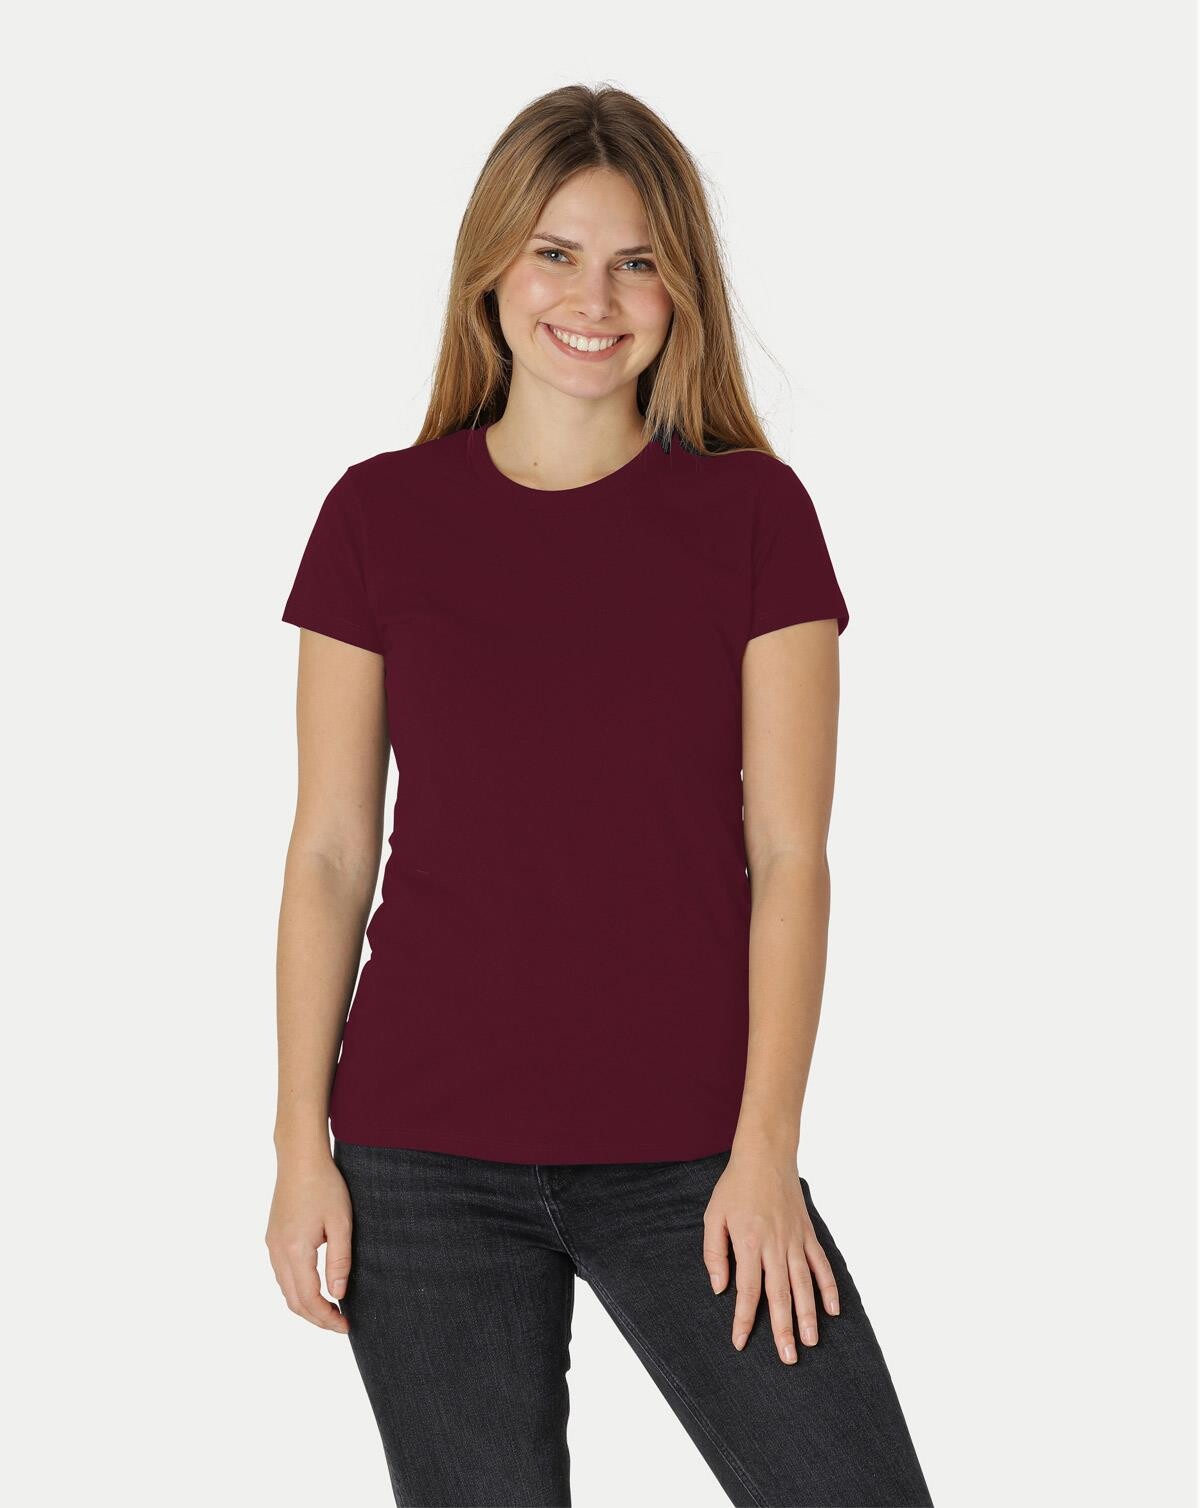 Neutral Økologisk Dame Tætsiddende T-Shirt (Bordeaux, L)